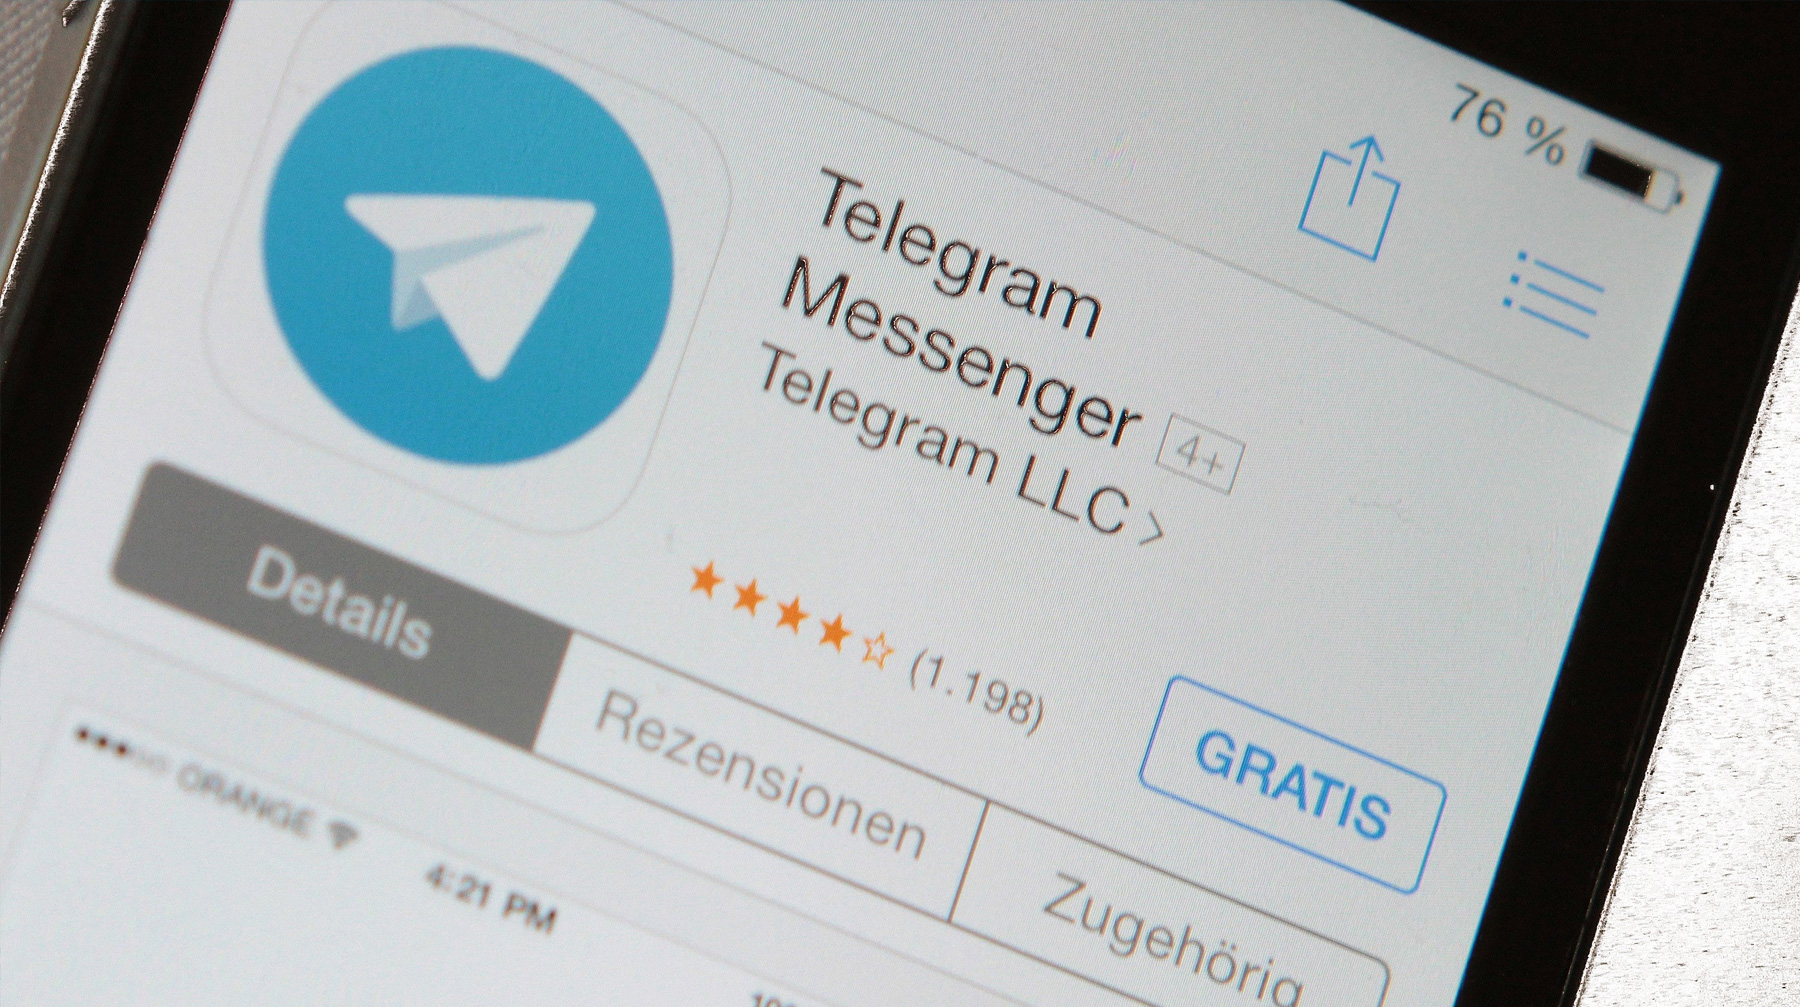 Восстановить аккаунт в телеграмме после удаления приложения фото 63